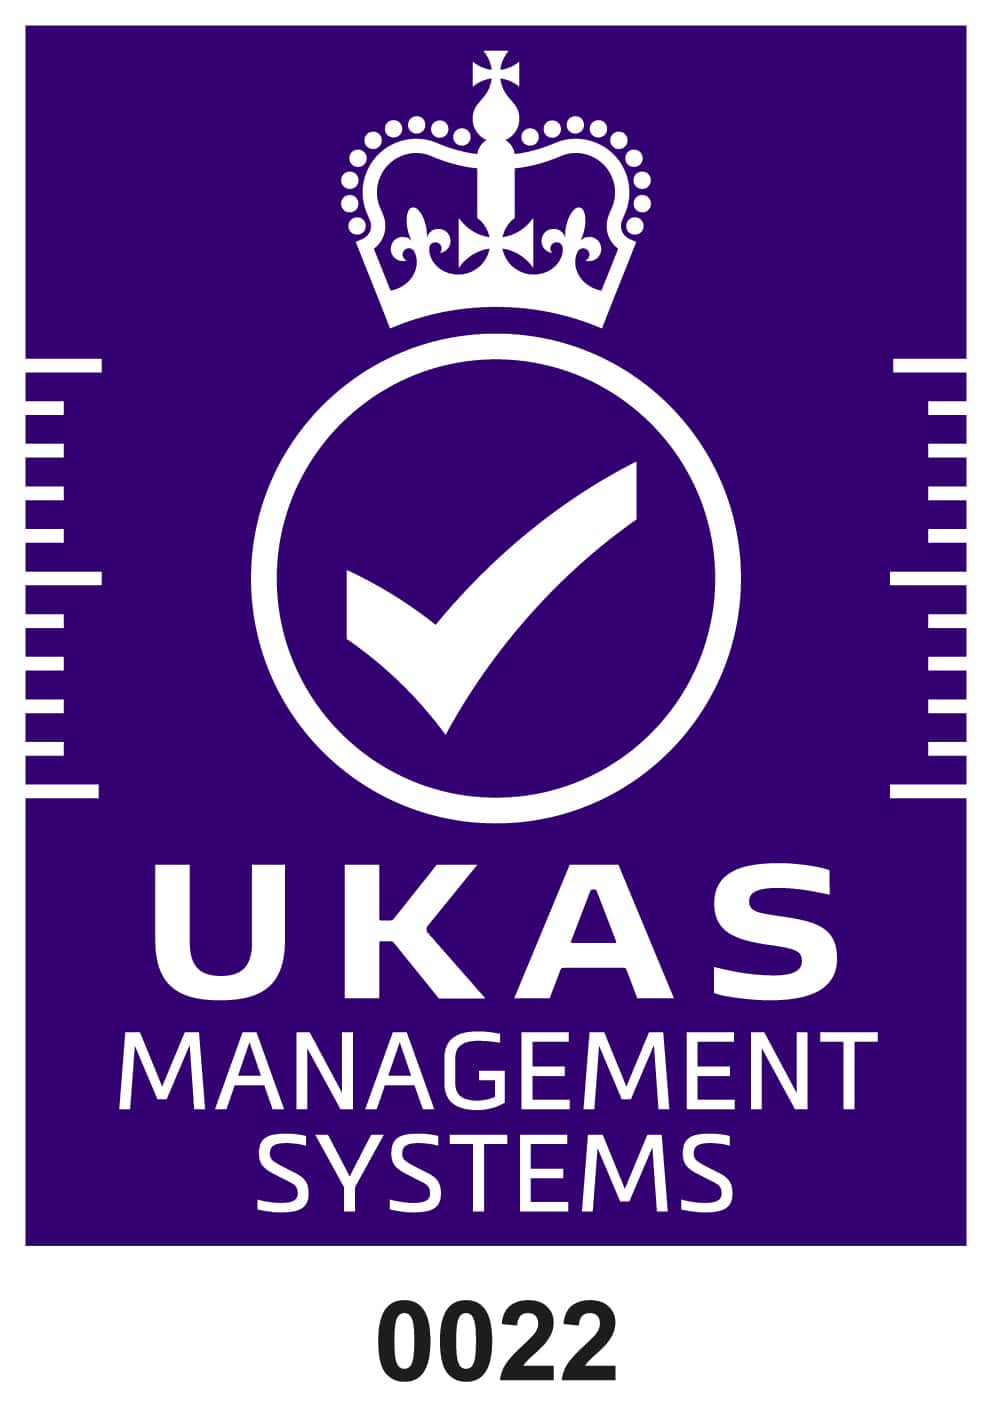 Ukas Akkreditierungssymbol weiß auf purpurnen Managementsystemen